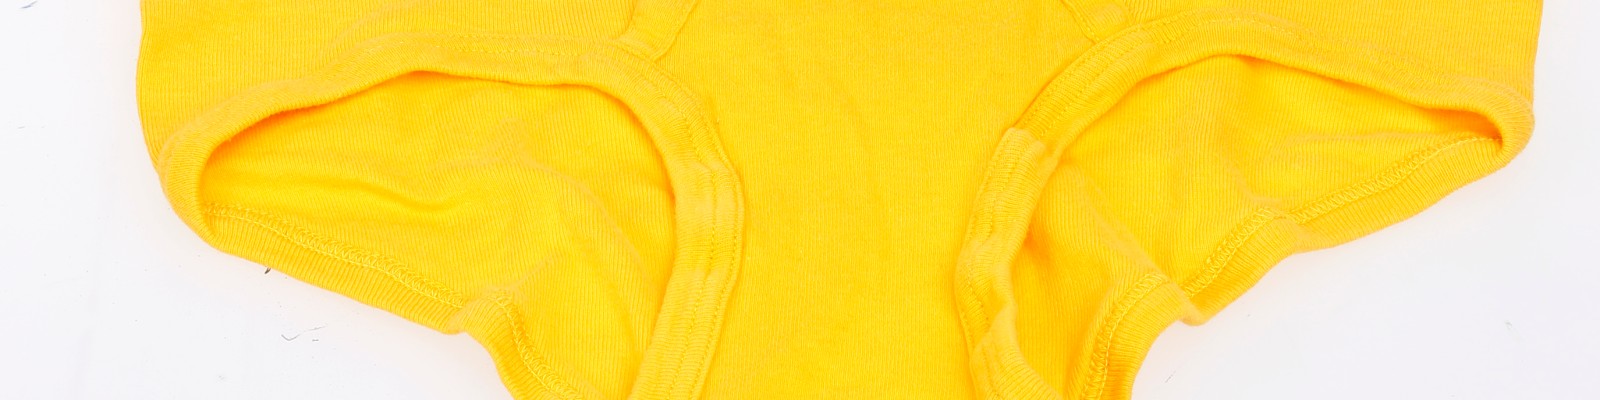 Um zu kontrollieren, dass nur die dafür gedachte Kleidung getragen wird, ist der AKW-Arbeitsanzug durchsichtig. Die dazu gehörige Unterwäsche ist gelb, da gut sichtbar, Hersteller: Benedikt Mäser Textil GmbH, 1975